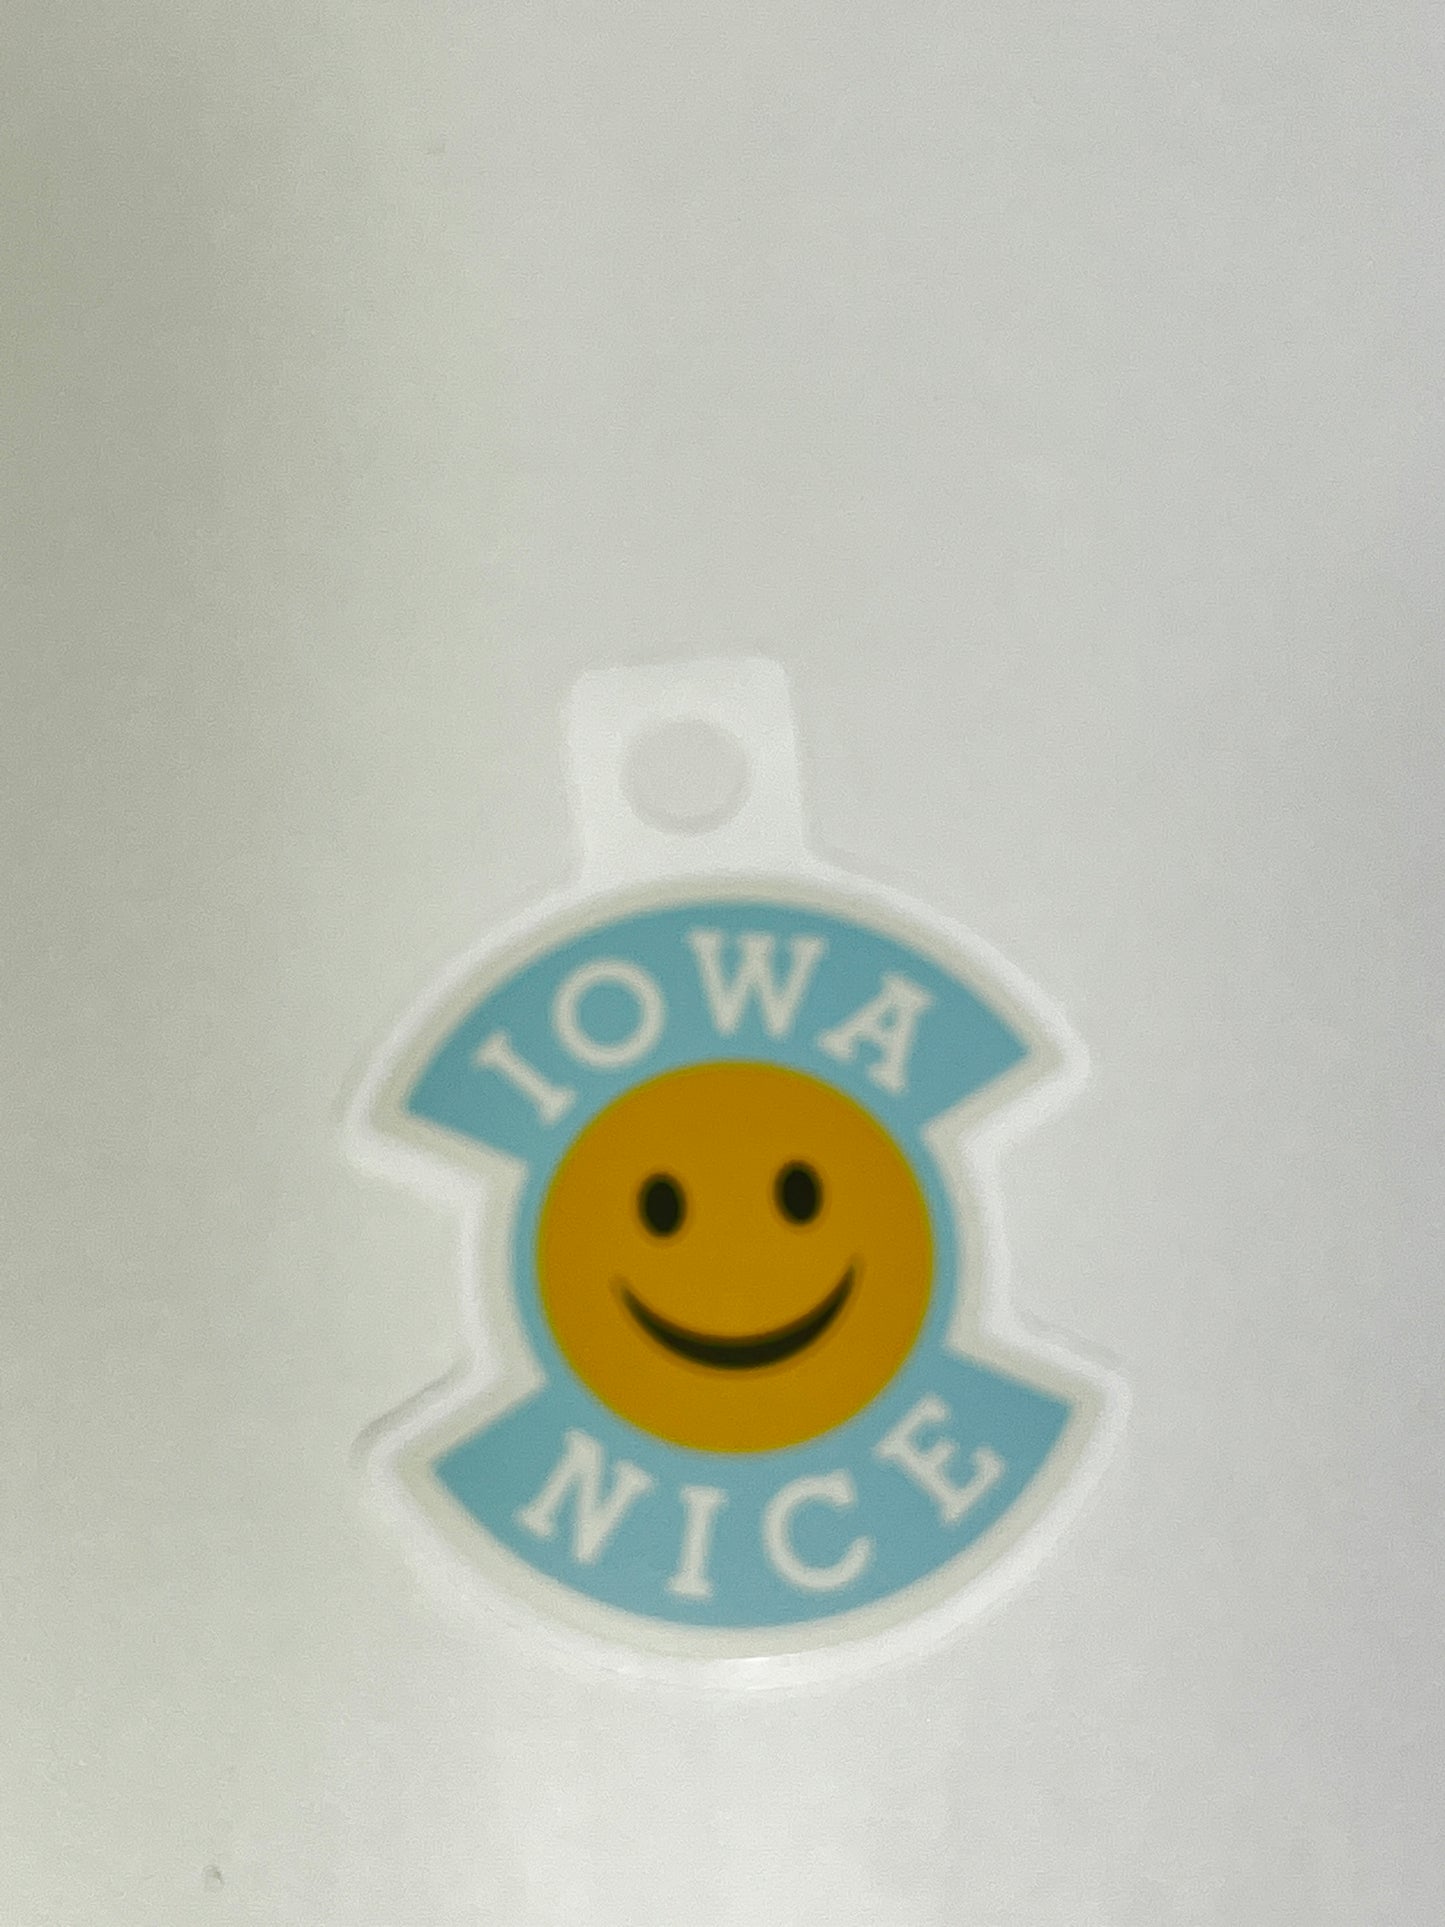 Iowa Nice Sticker